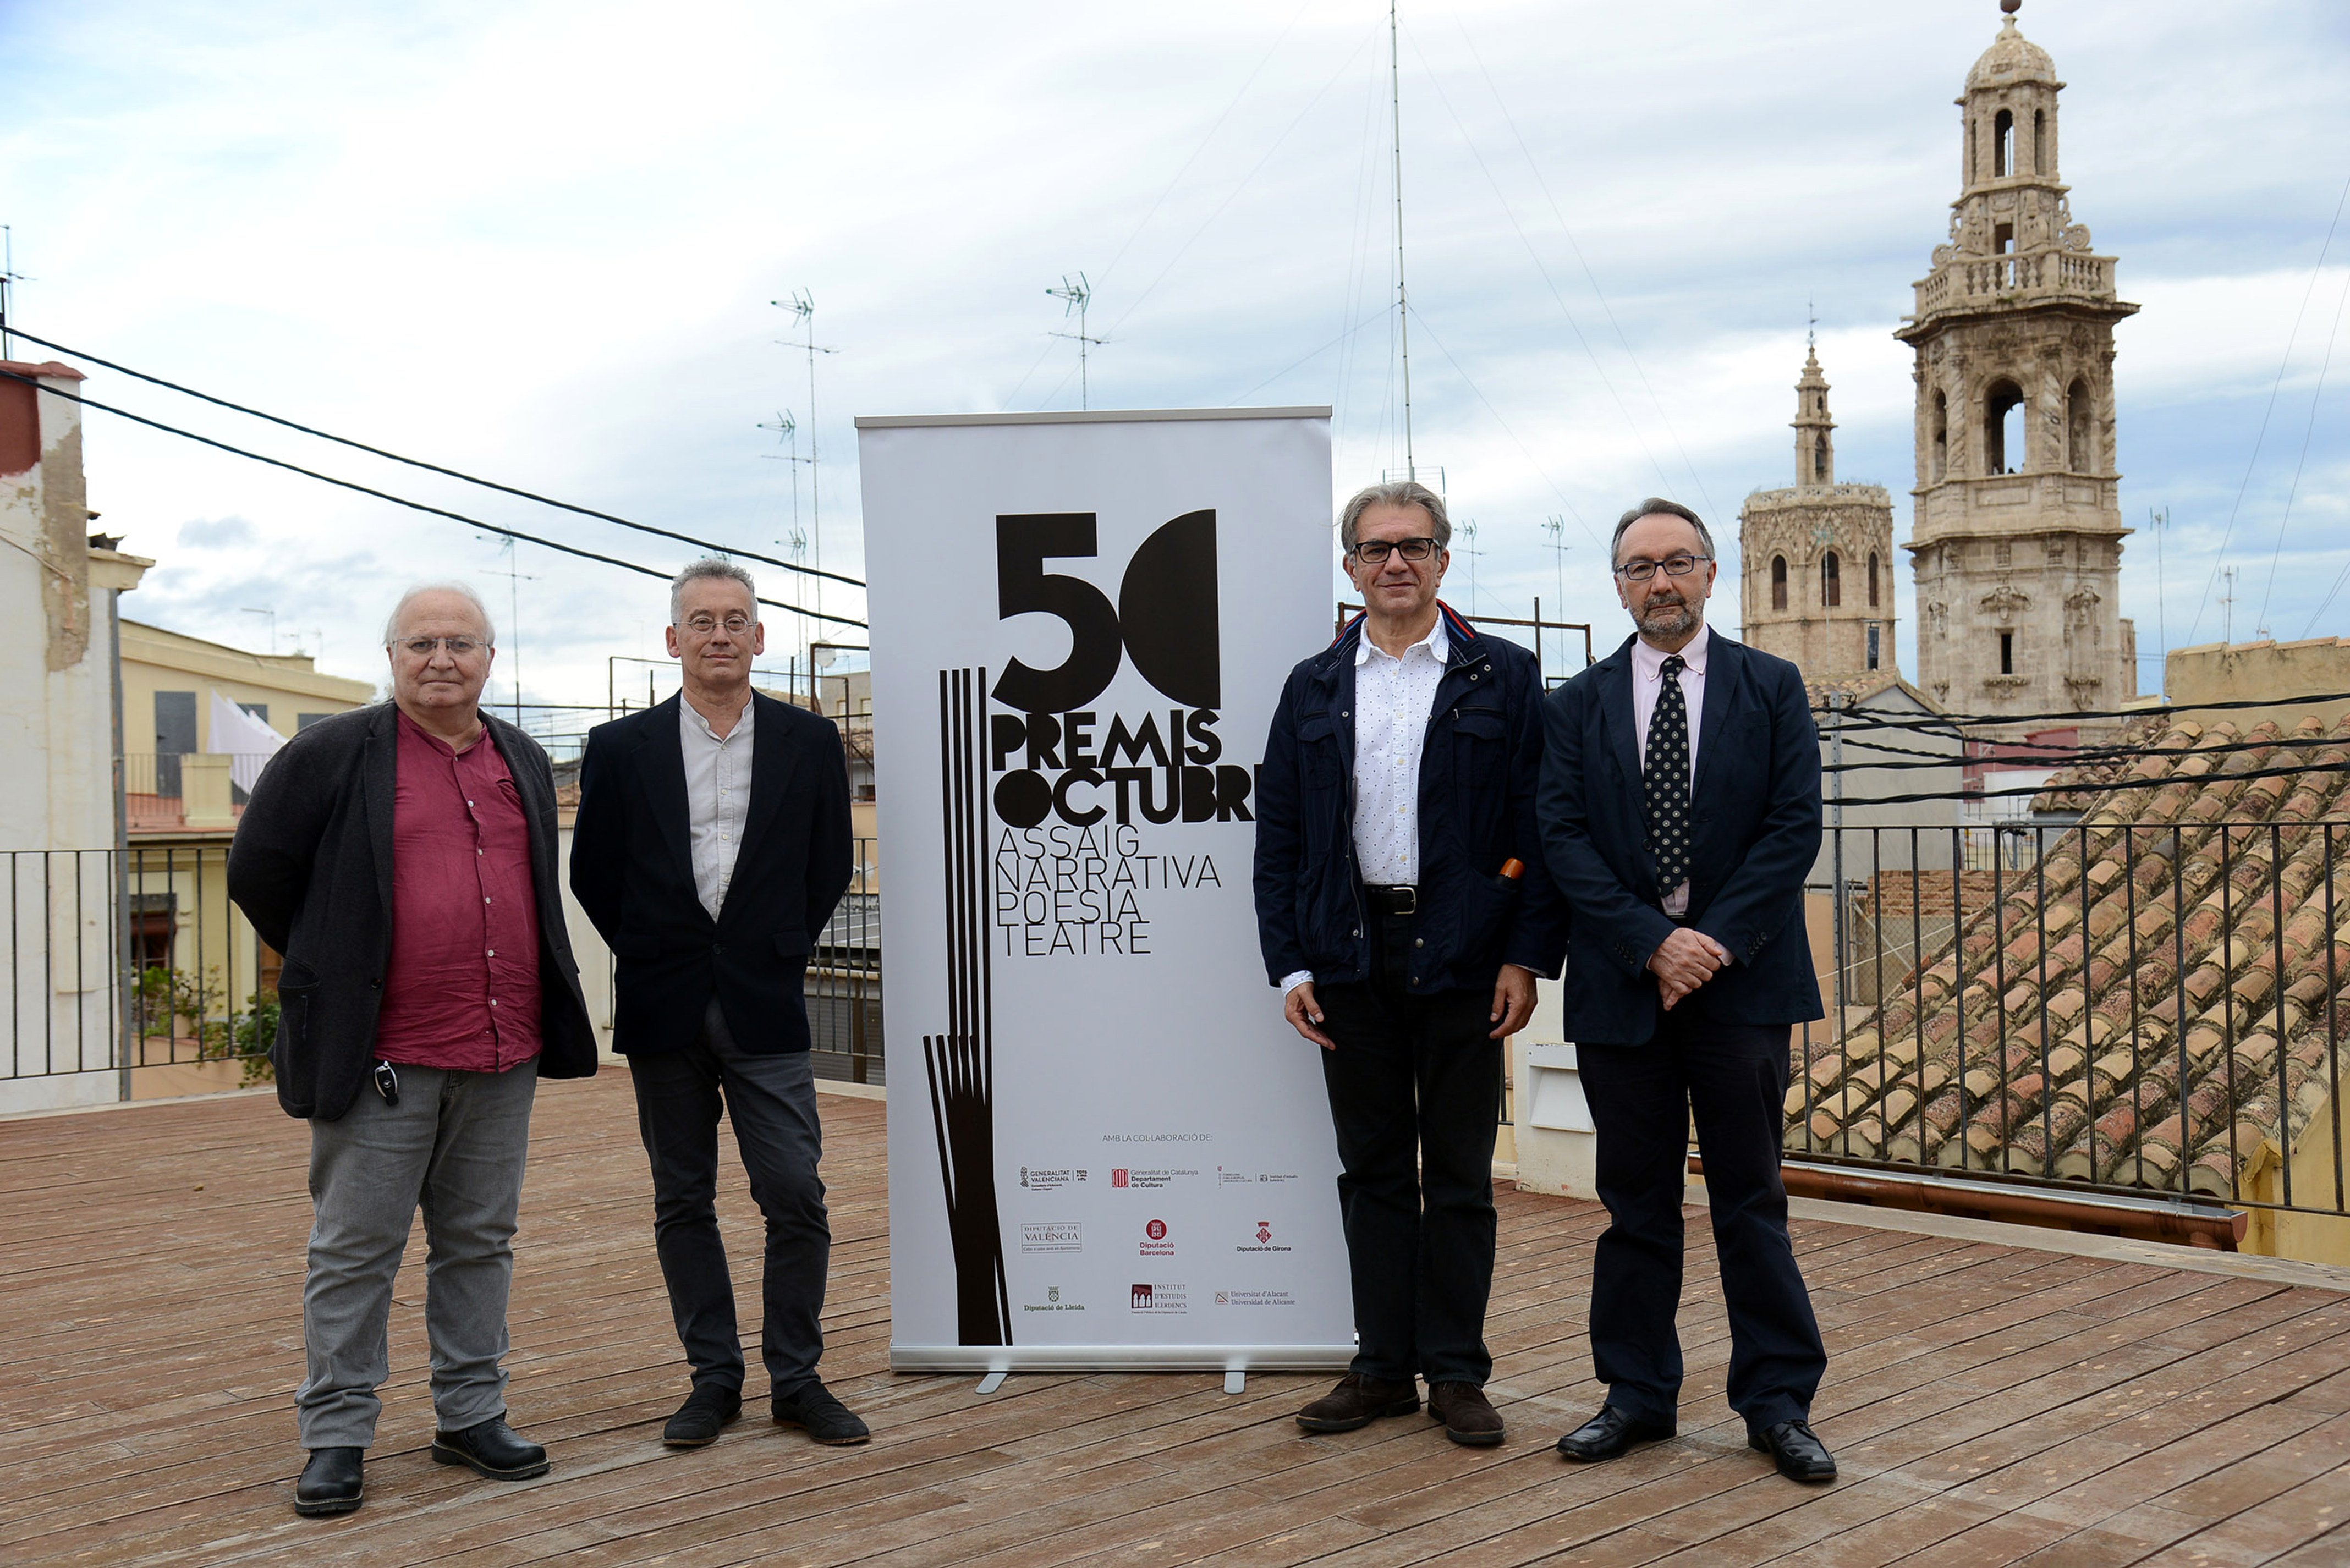 Gabriel Ensenyat i Ricard Ripoll, guanyadors dels 50 Premis Octubre